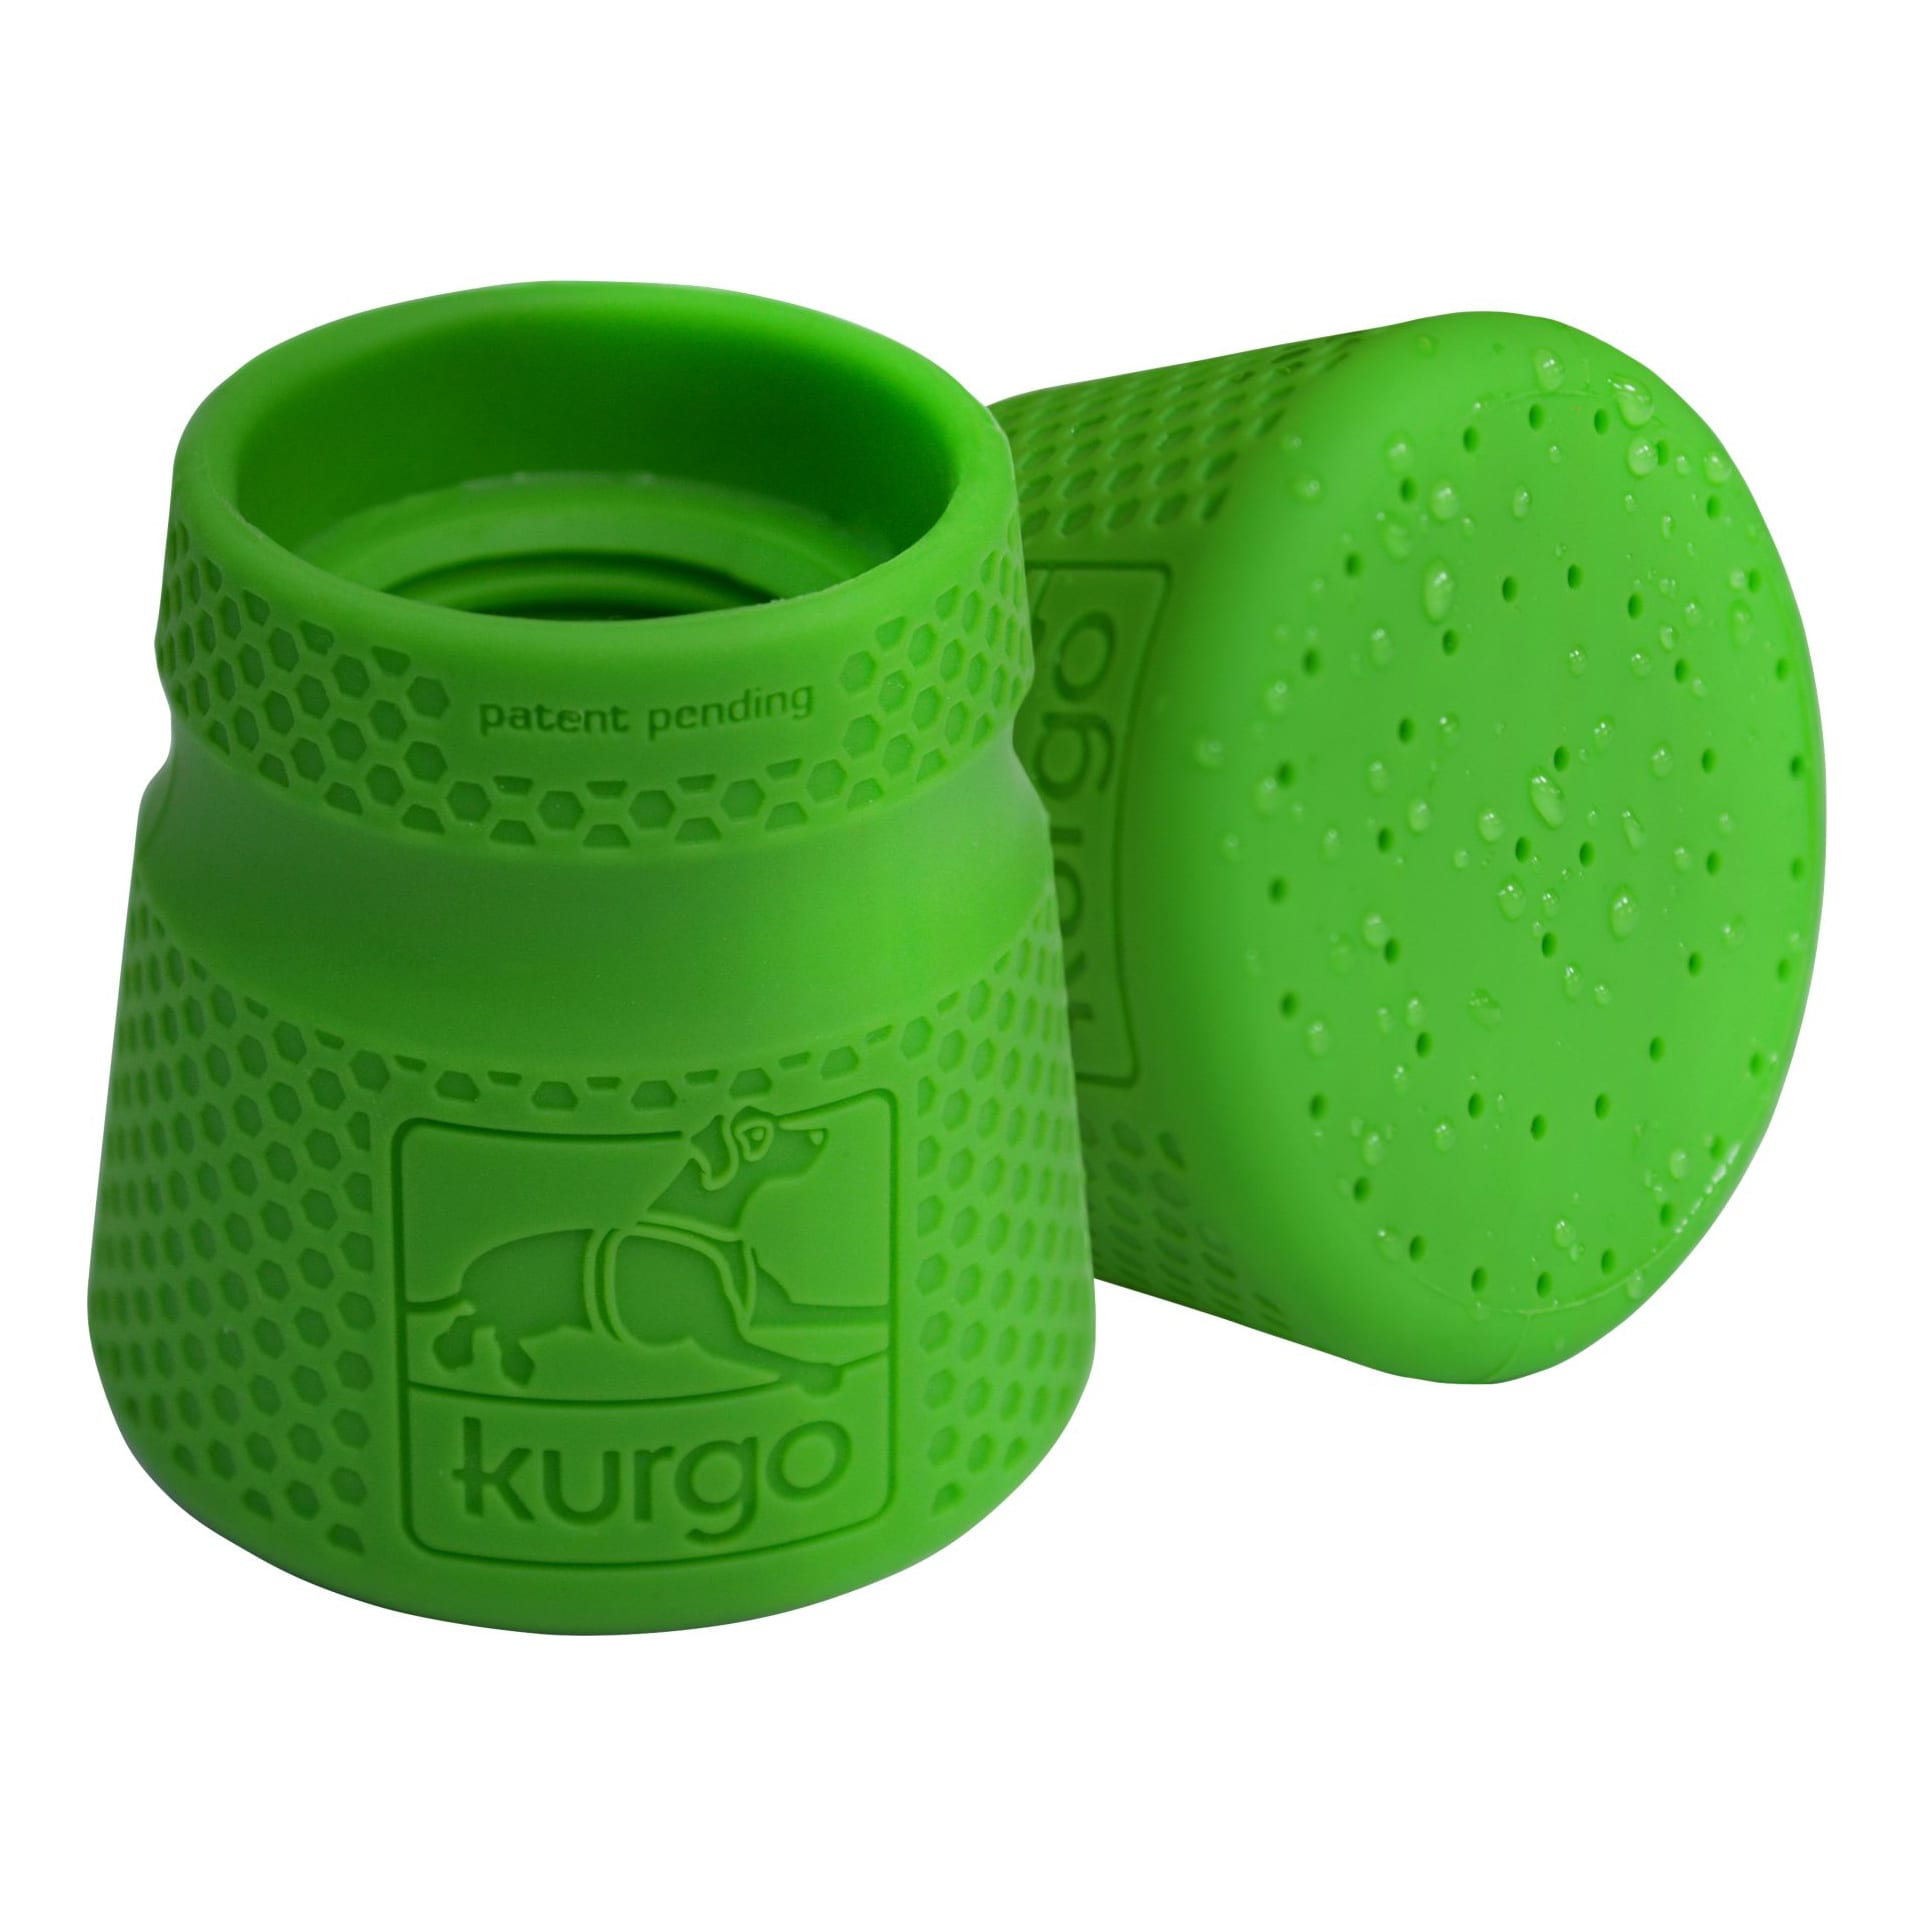 Kurgo® Mud Dog Travel Shower